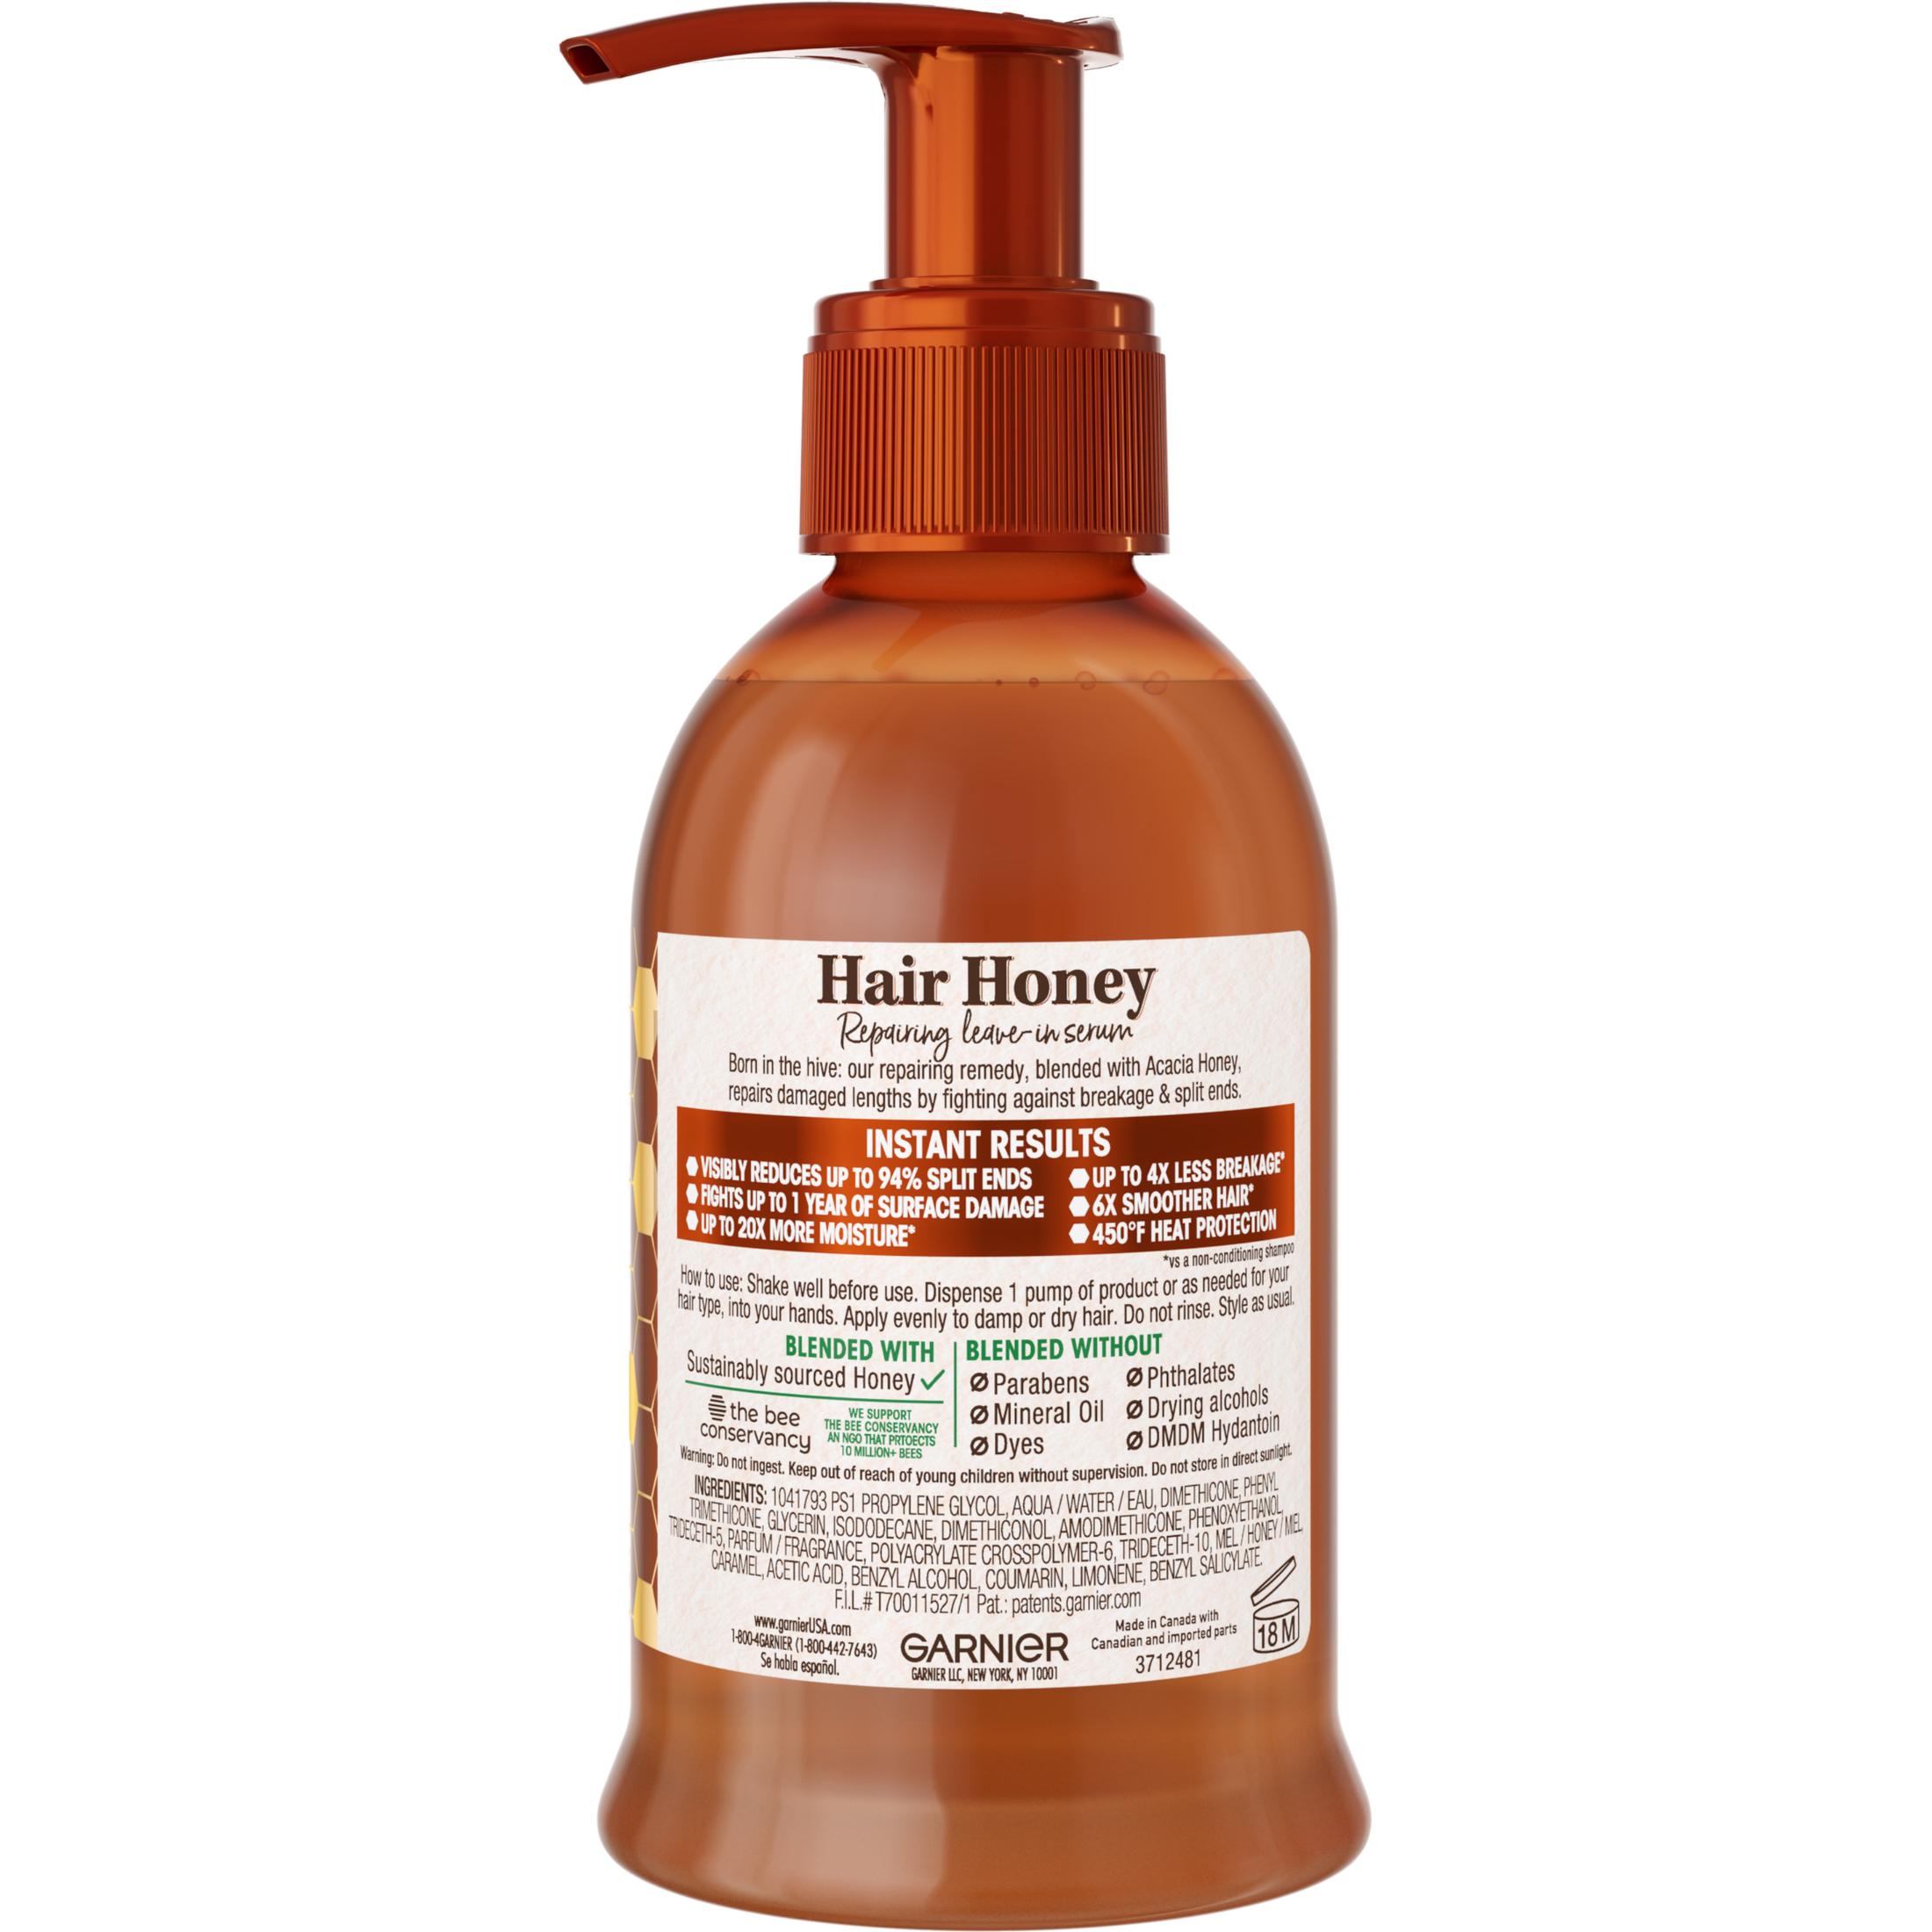 Garnier Whole Blends Honey Treasures Hair Honey Repairing Leave In Serum, 5.1 fl oz - image 3 of 12